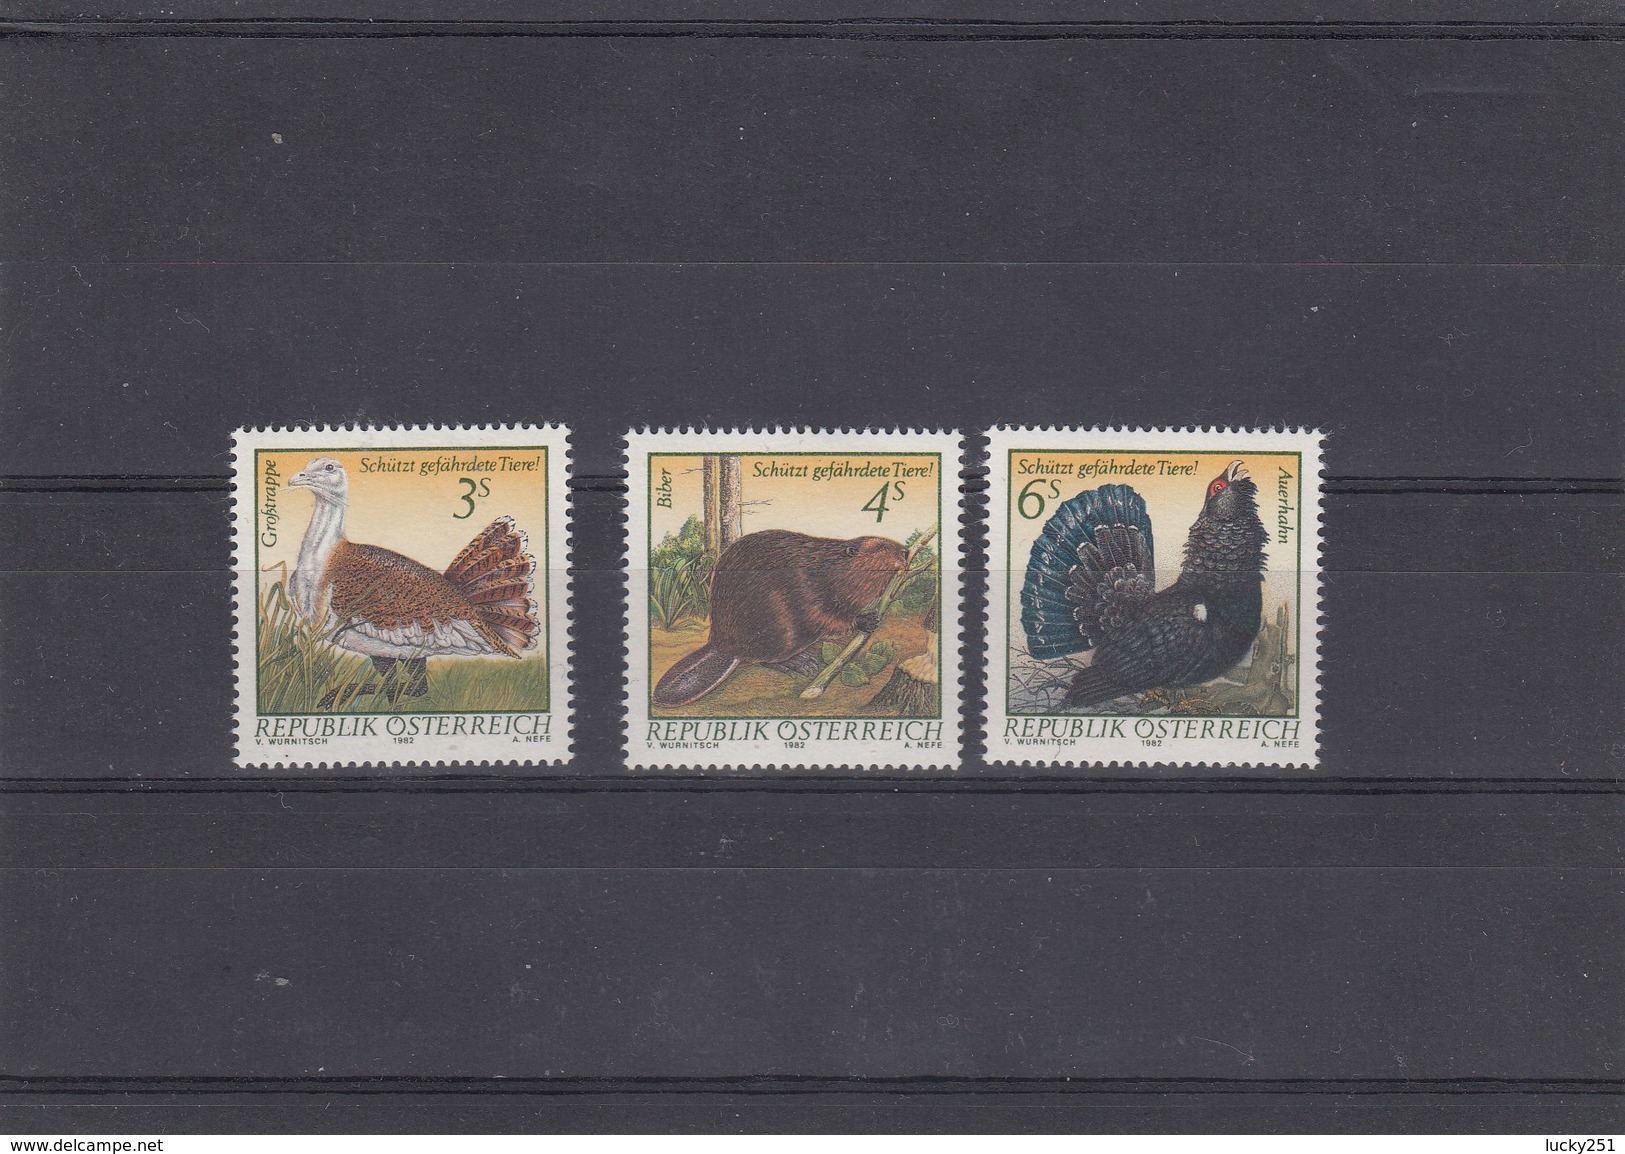 Autriche - Neufs**, Faune Diverse, Année 1982, Y.T. 1546/1548 - Unused Stamps